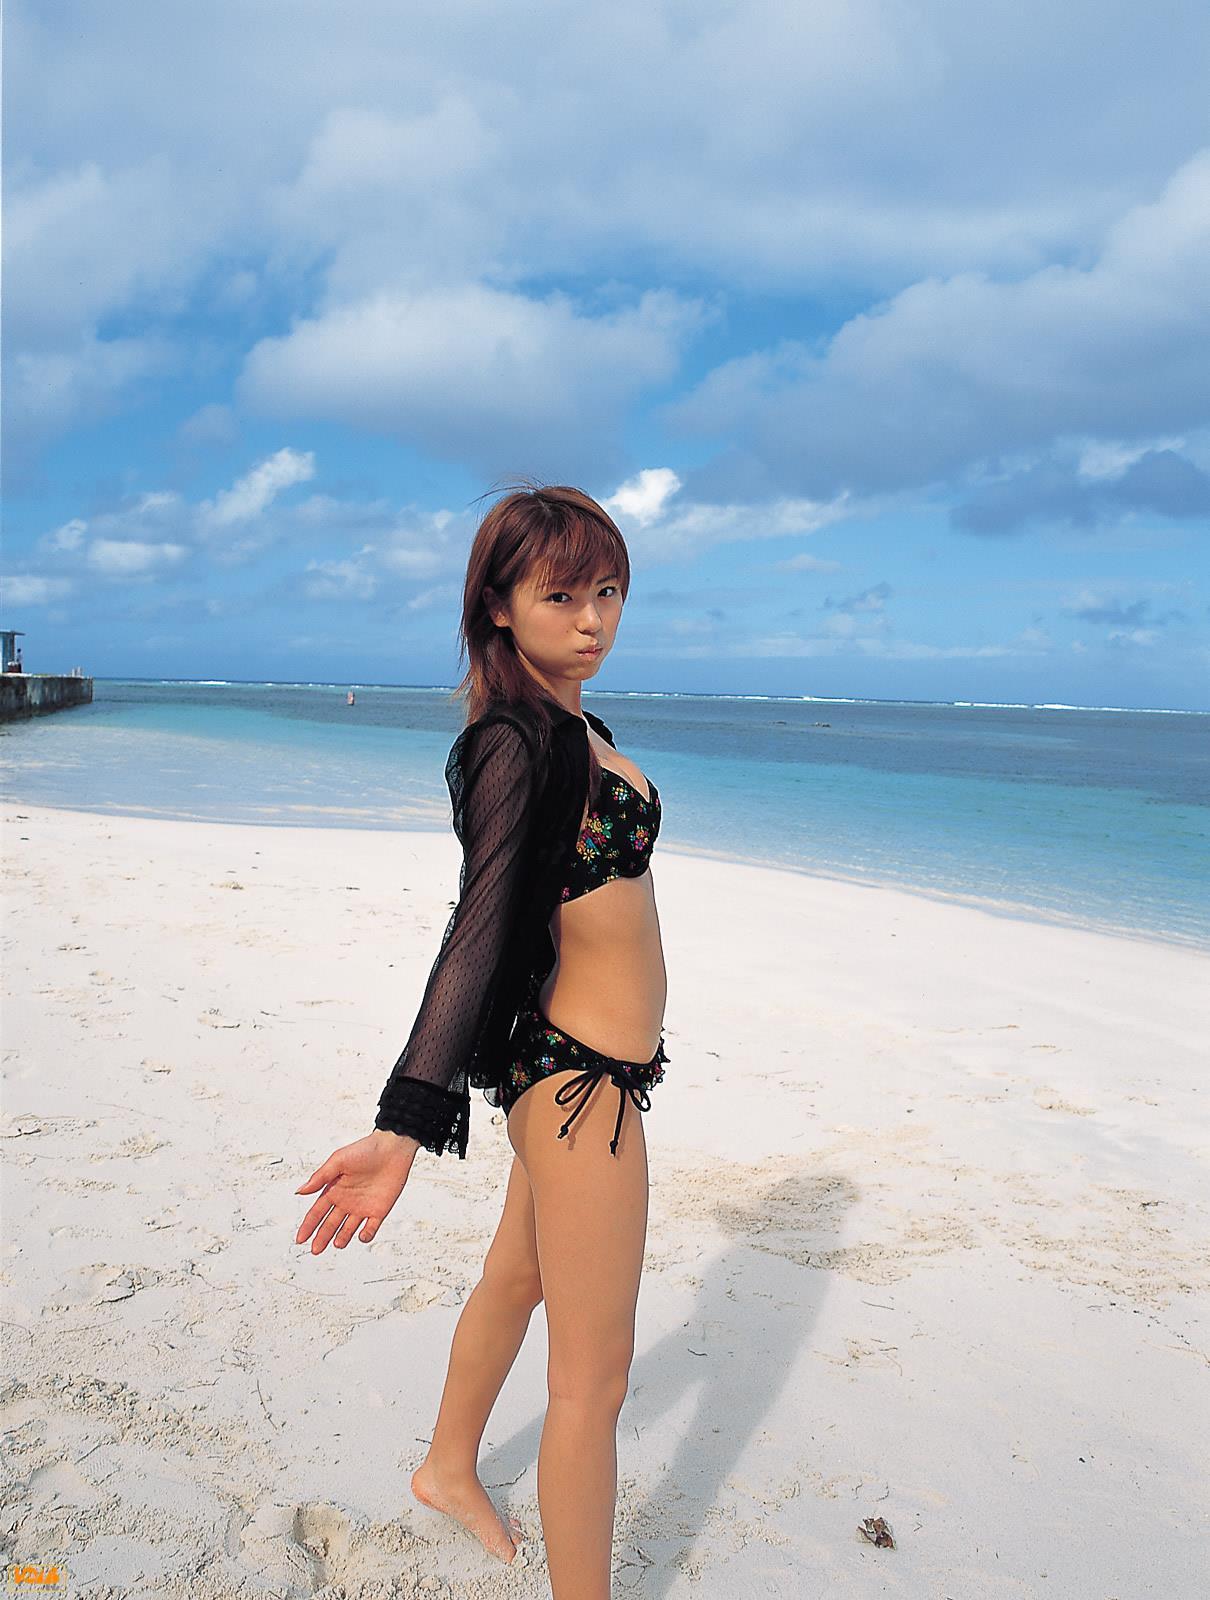 [BOMB.tv]写真2003年 若槻千夏 Wakatsuki Chinatsu 性感比基尼泳装与短袖湿身诱惑私房写真集,